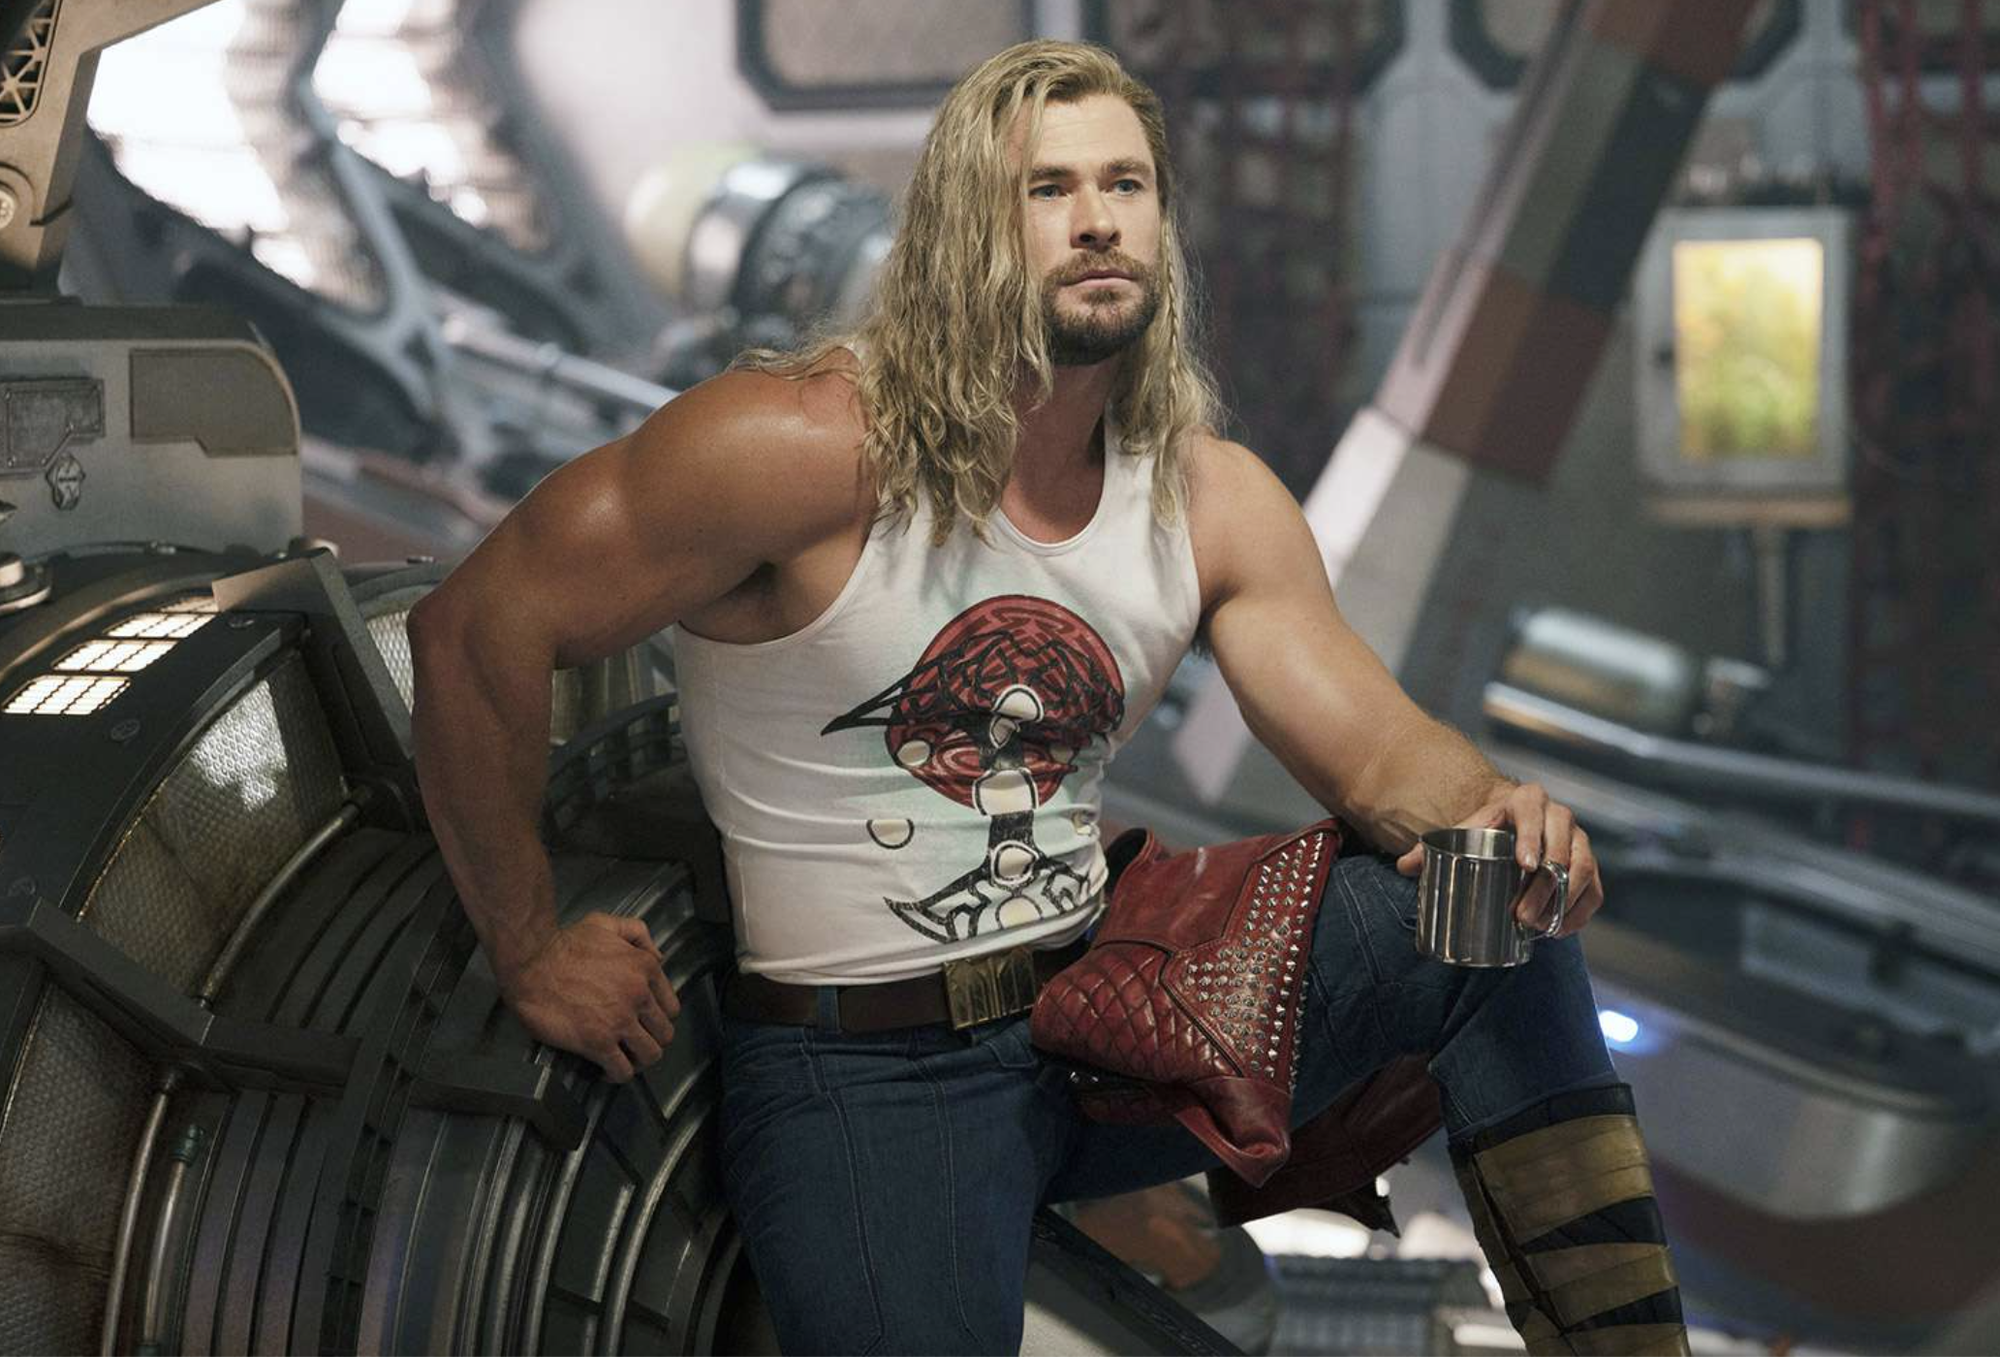 Nhiều diễn viên chỉ trích phim Marvel, Chris Hemsworth thất vọng - Ảnh 1.